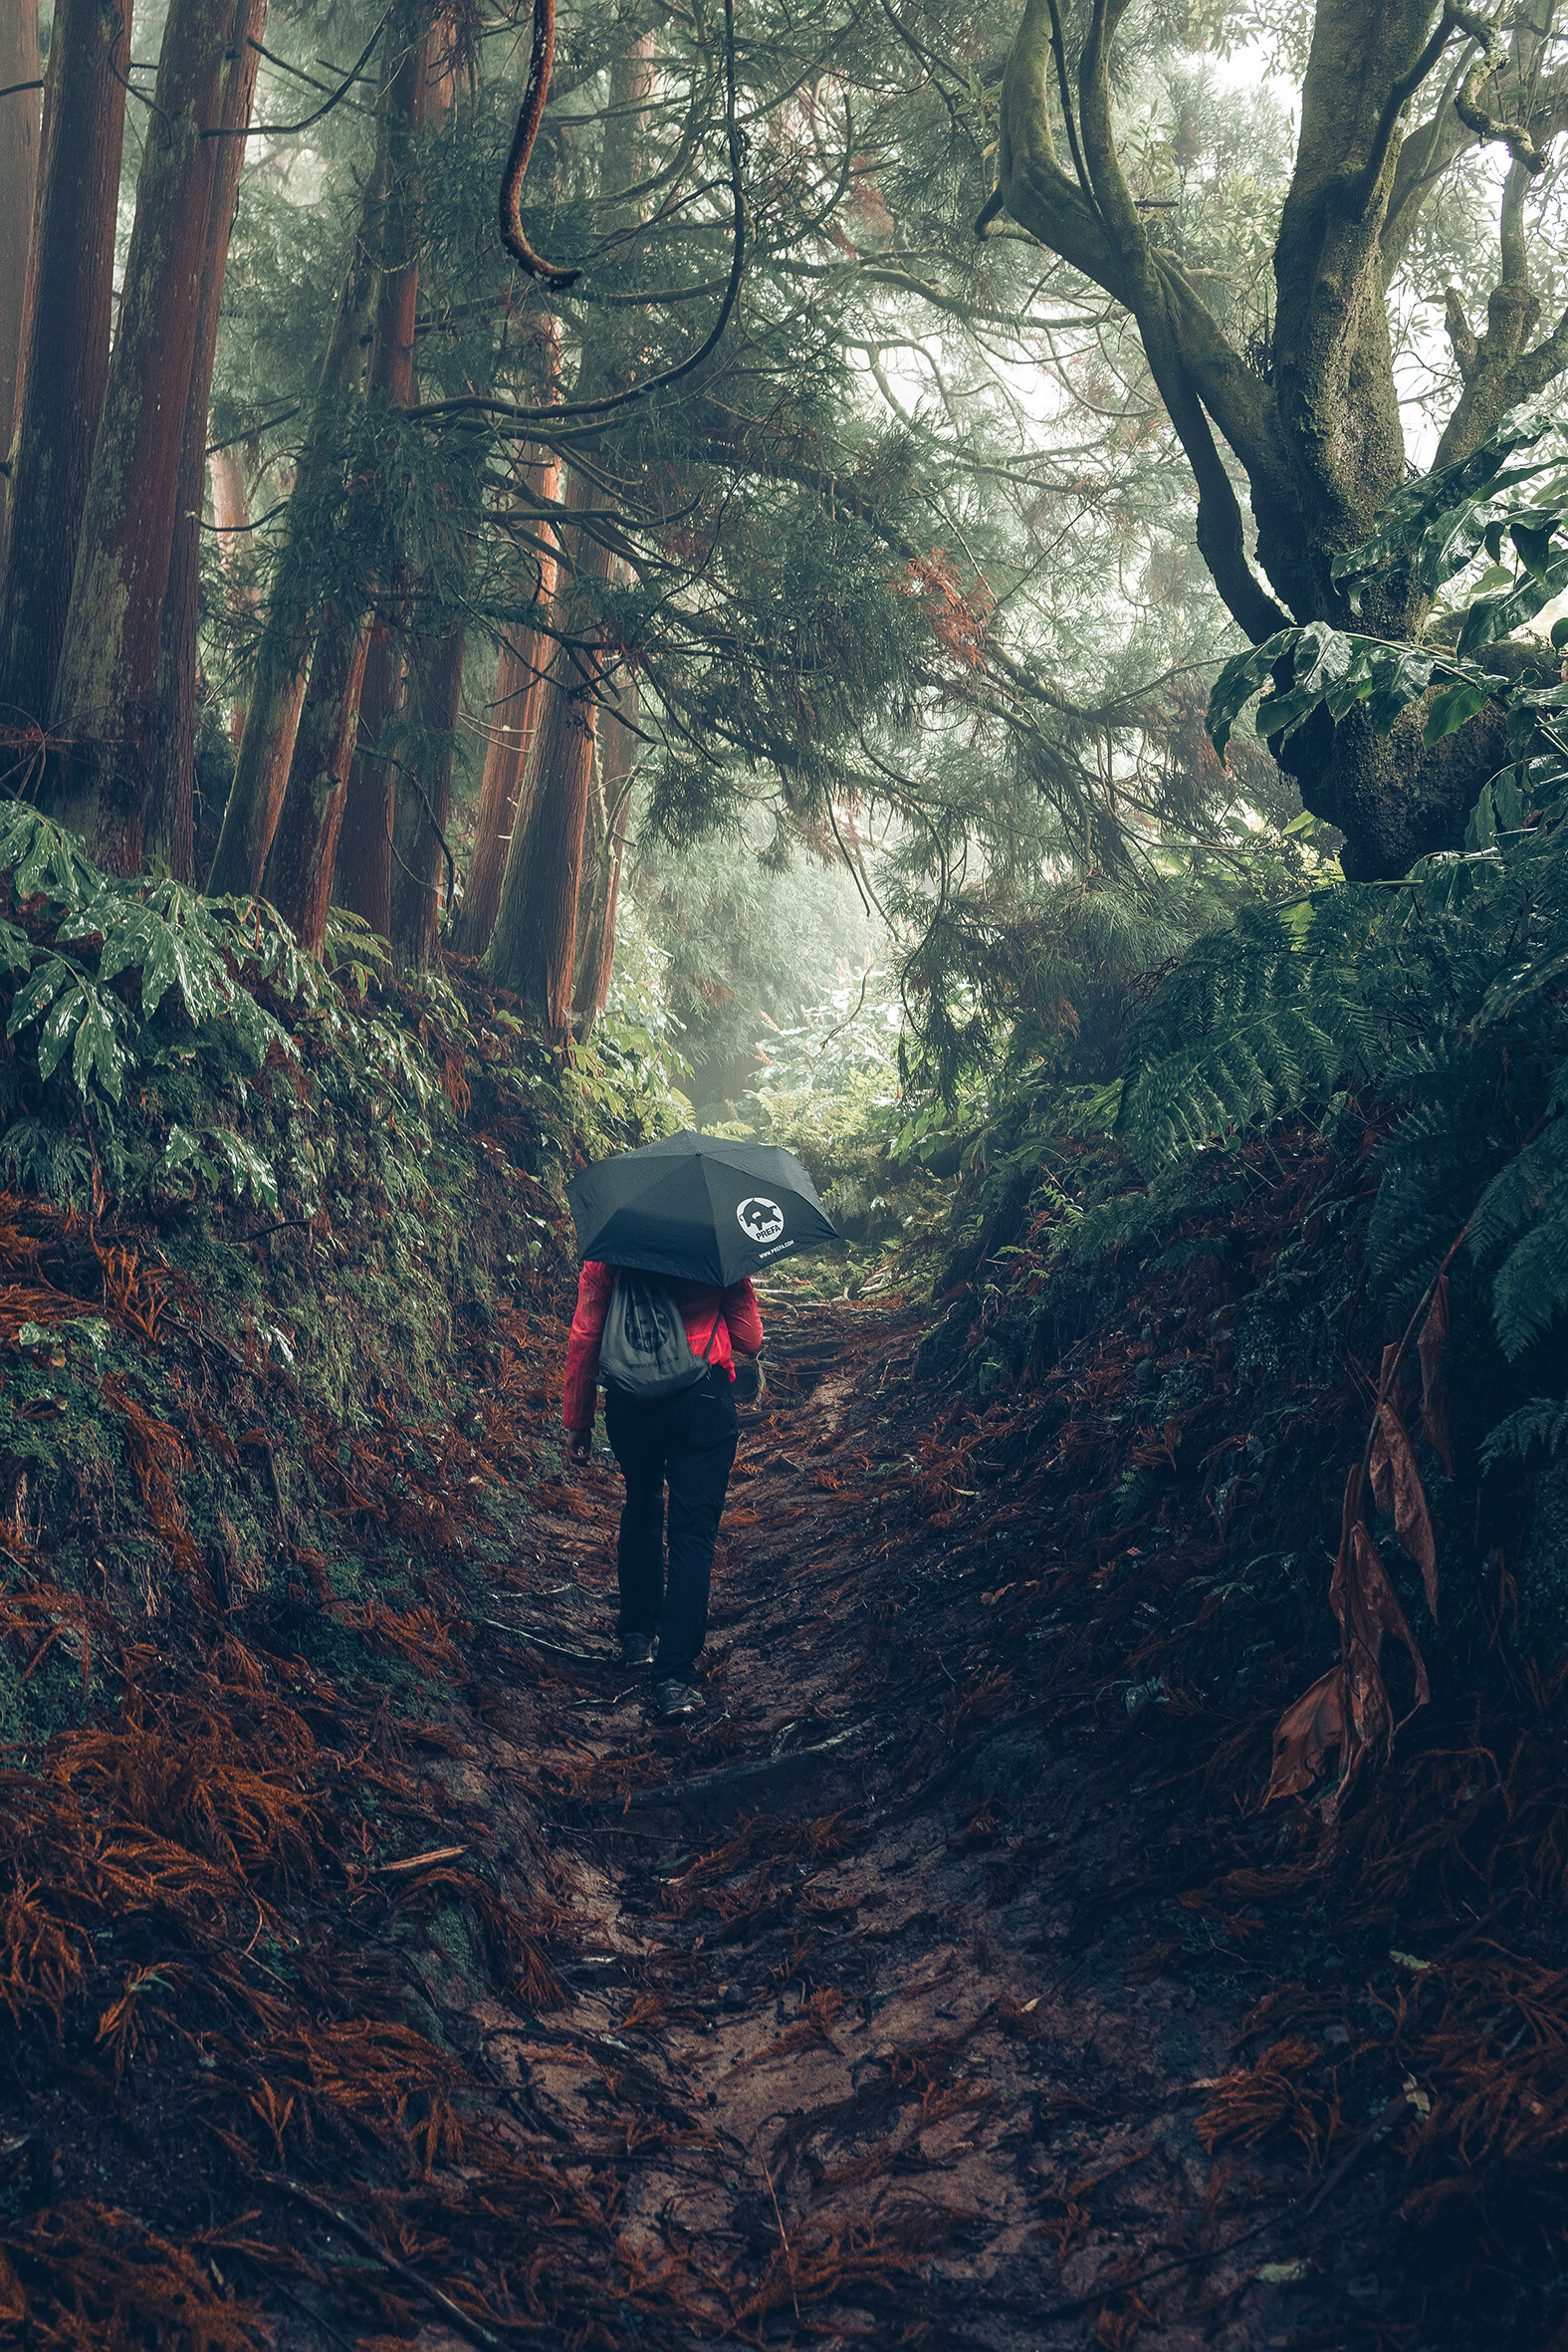 Fotografija u šumi na kojoj je izletnik u crvenoj jakni s PREFA kišobranom i torbom za vježbanje, simbolizira PREFA zaštitu okoliša i održivost te kružno gospodarstvo i recikliranje.